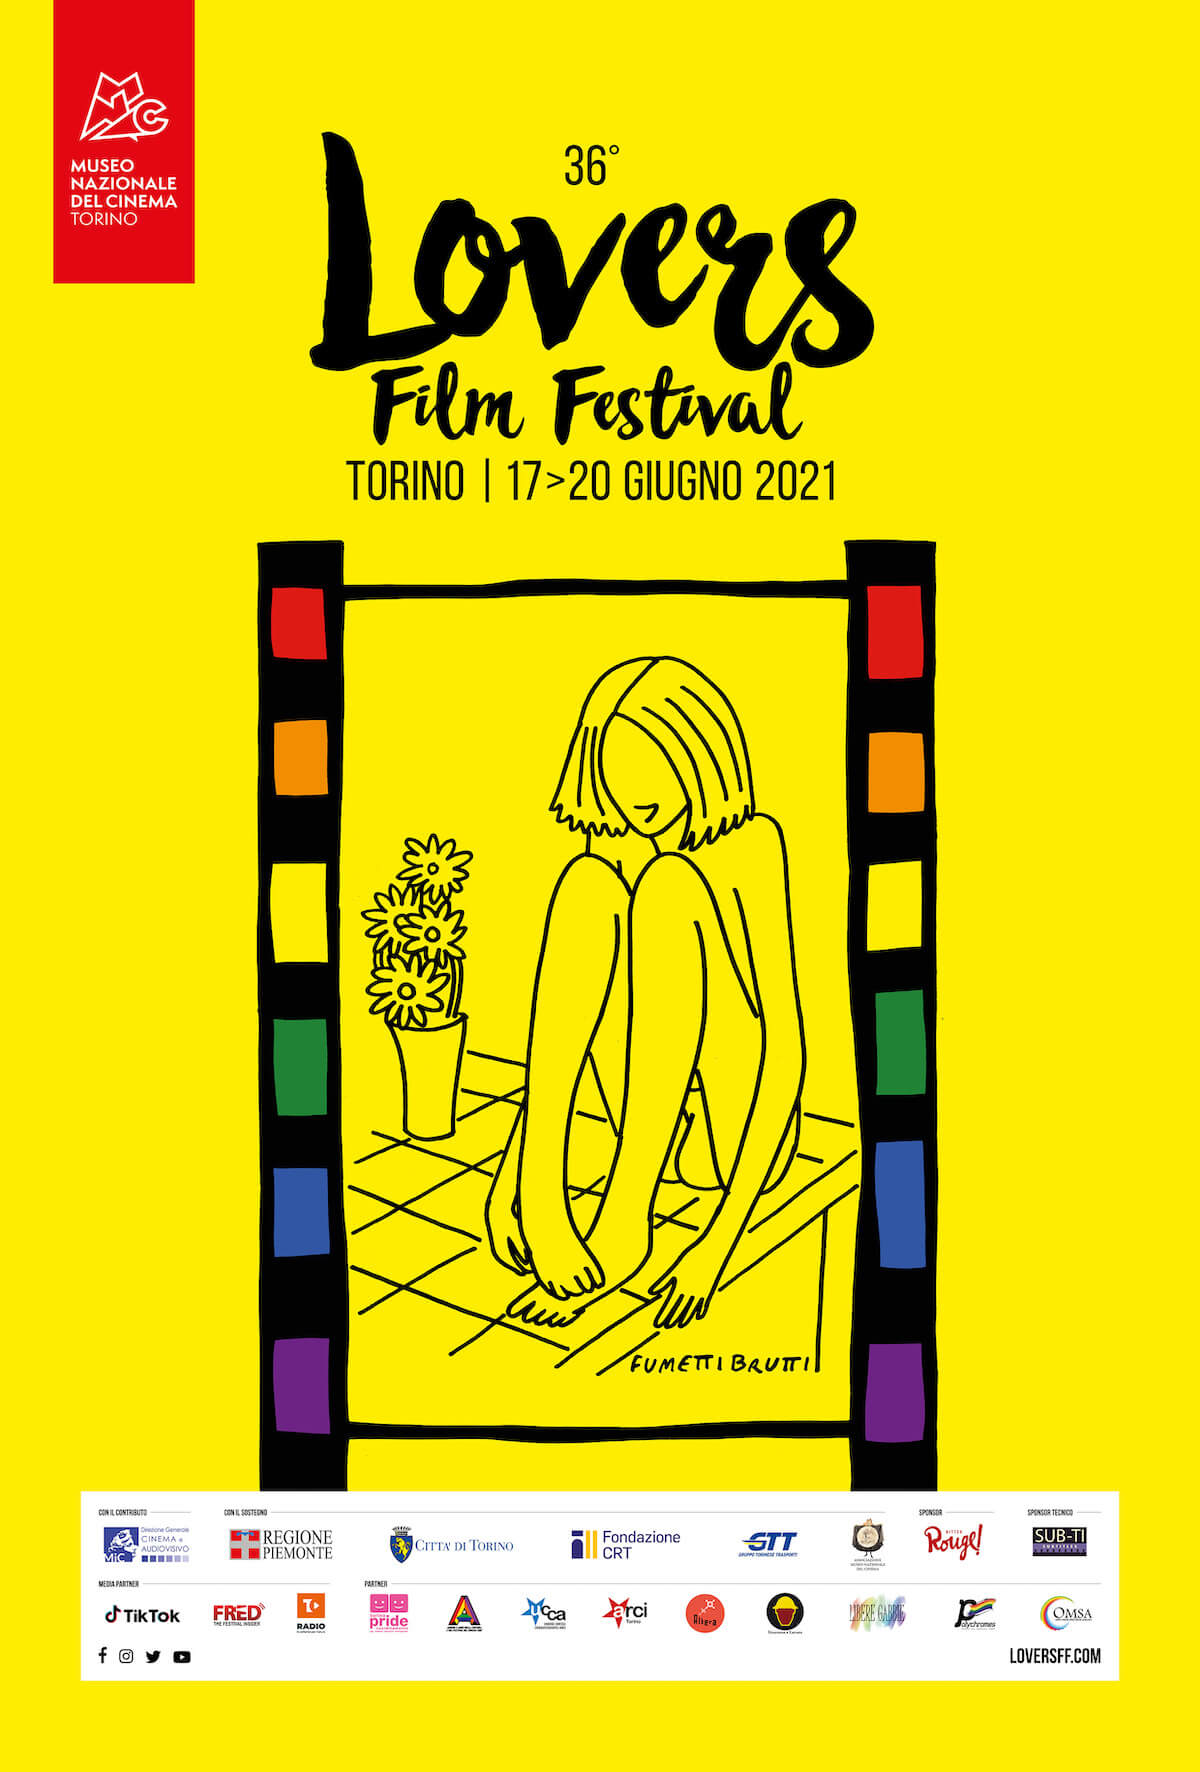 Lovers Film Festival 2021, il manifesto ufficiale firmato Fumettibrutti: "Fierezza, orgoglio e rinascita" - Lovers Film Festival 2021 il manifesto ufficiale firmato Fumettibrutti 2 - Gay.it